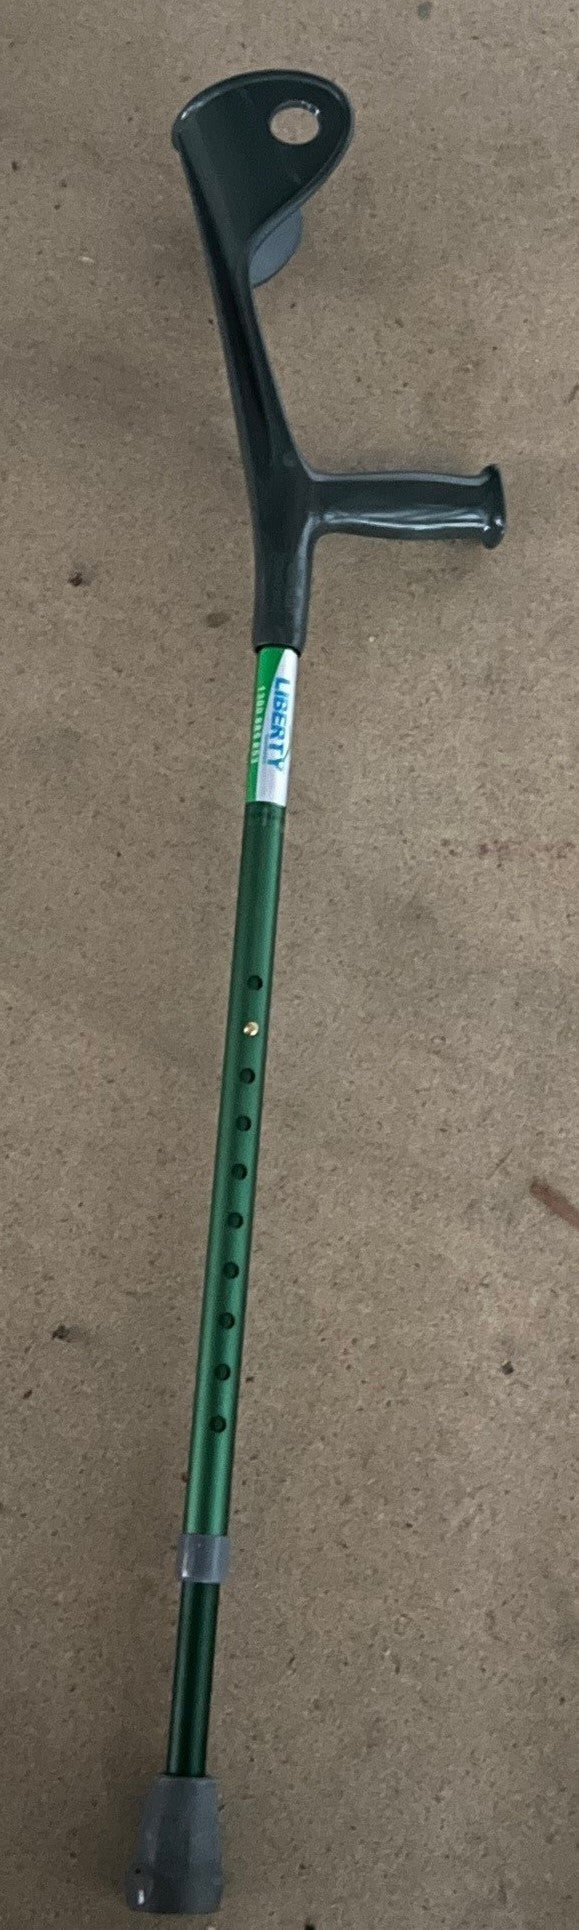 Forearm crutch  pair  colour Green